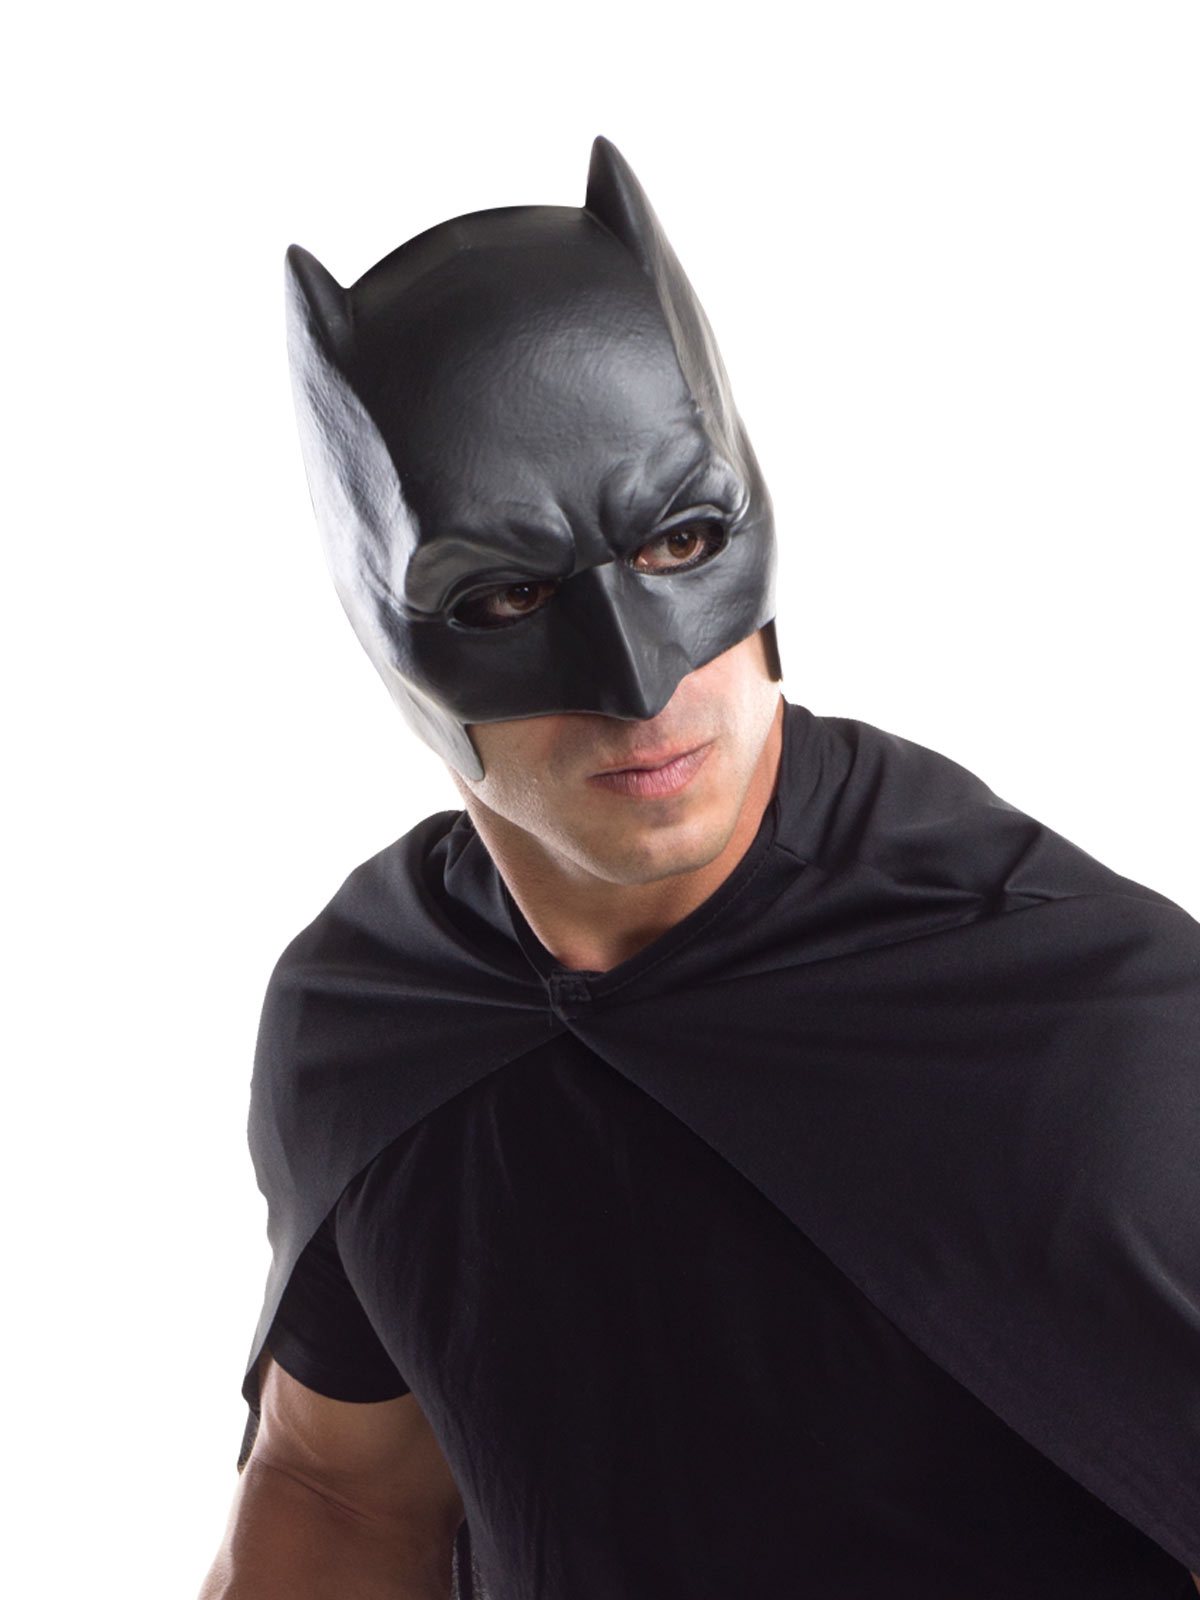 Costume Adult Batman Cape/Mask Set